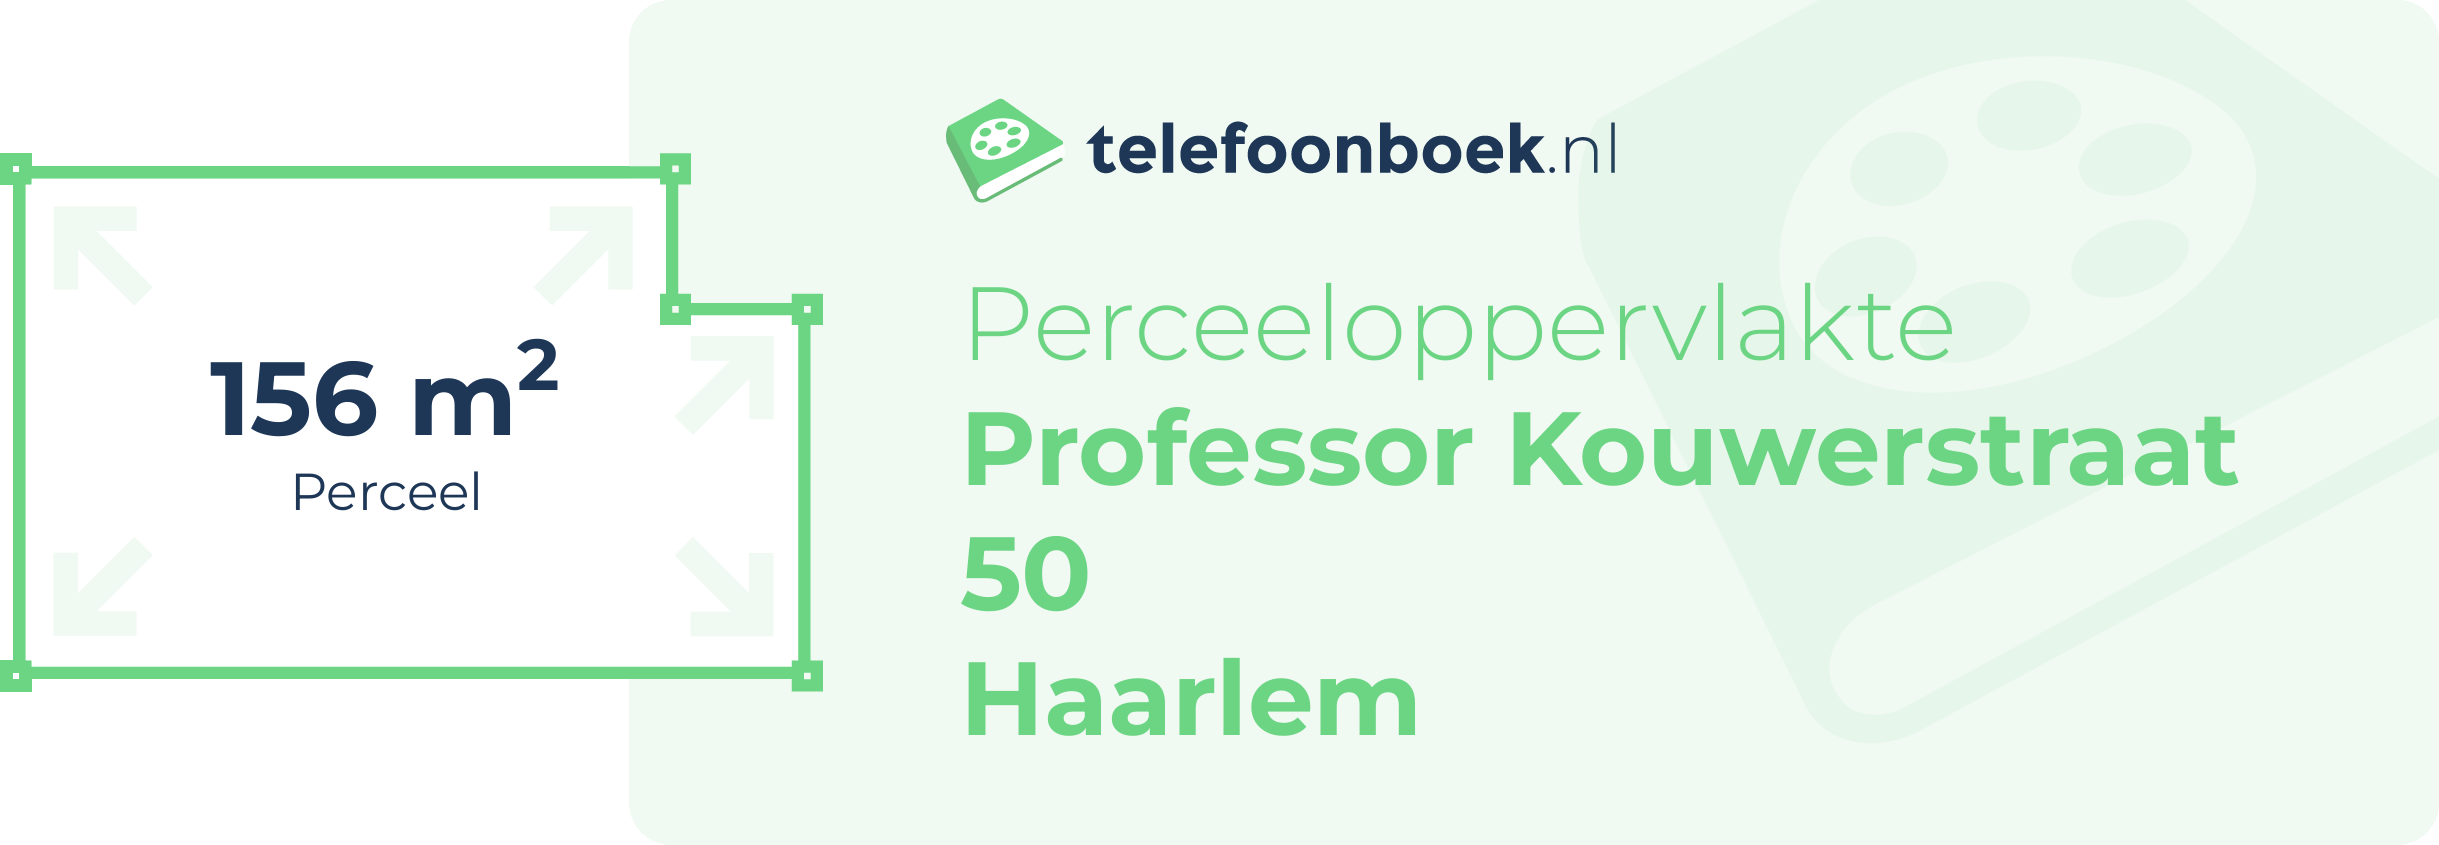 Perceeloppervlakte Professor Kouwerstraat 50 Haarlem